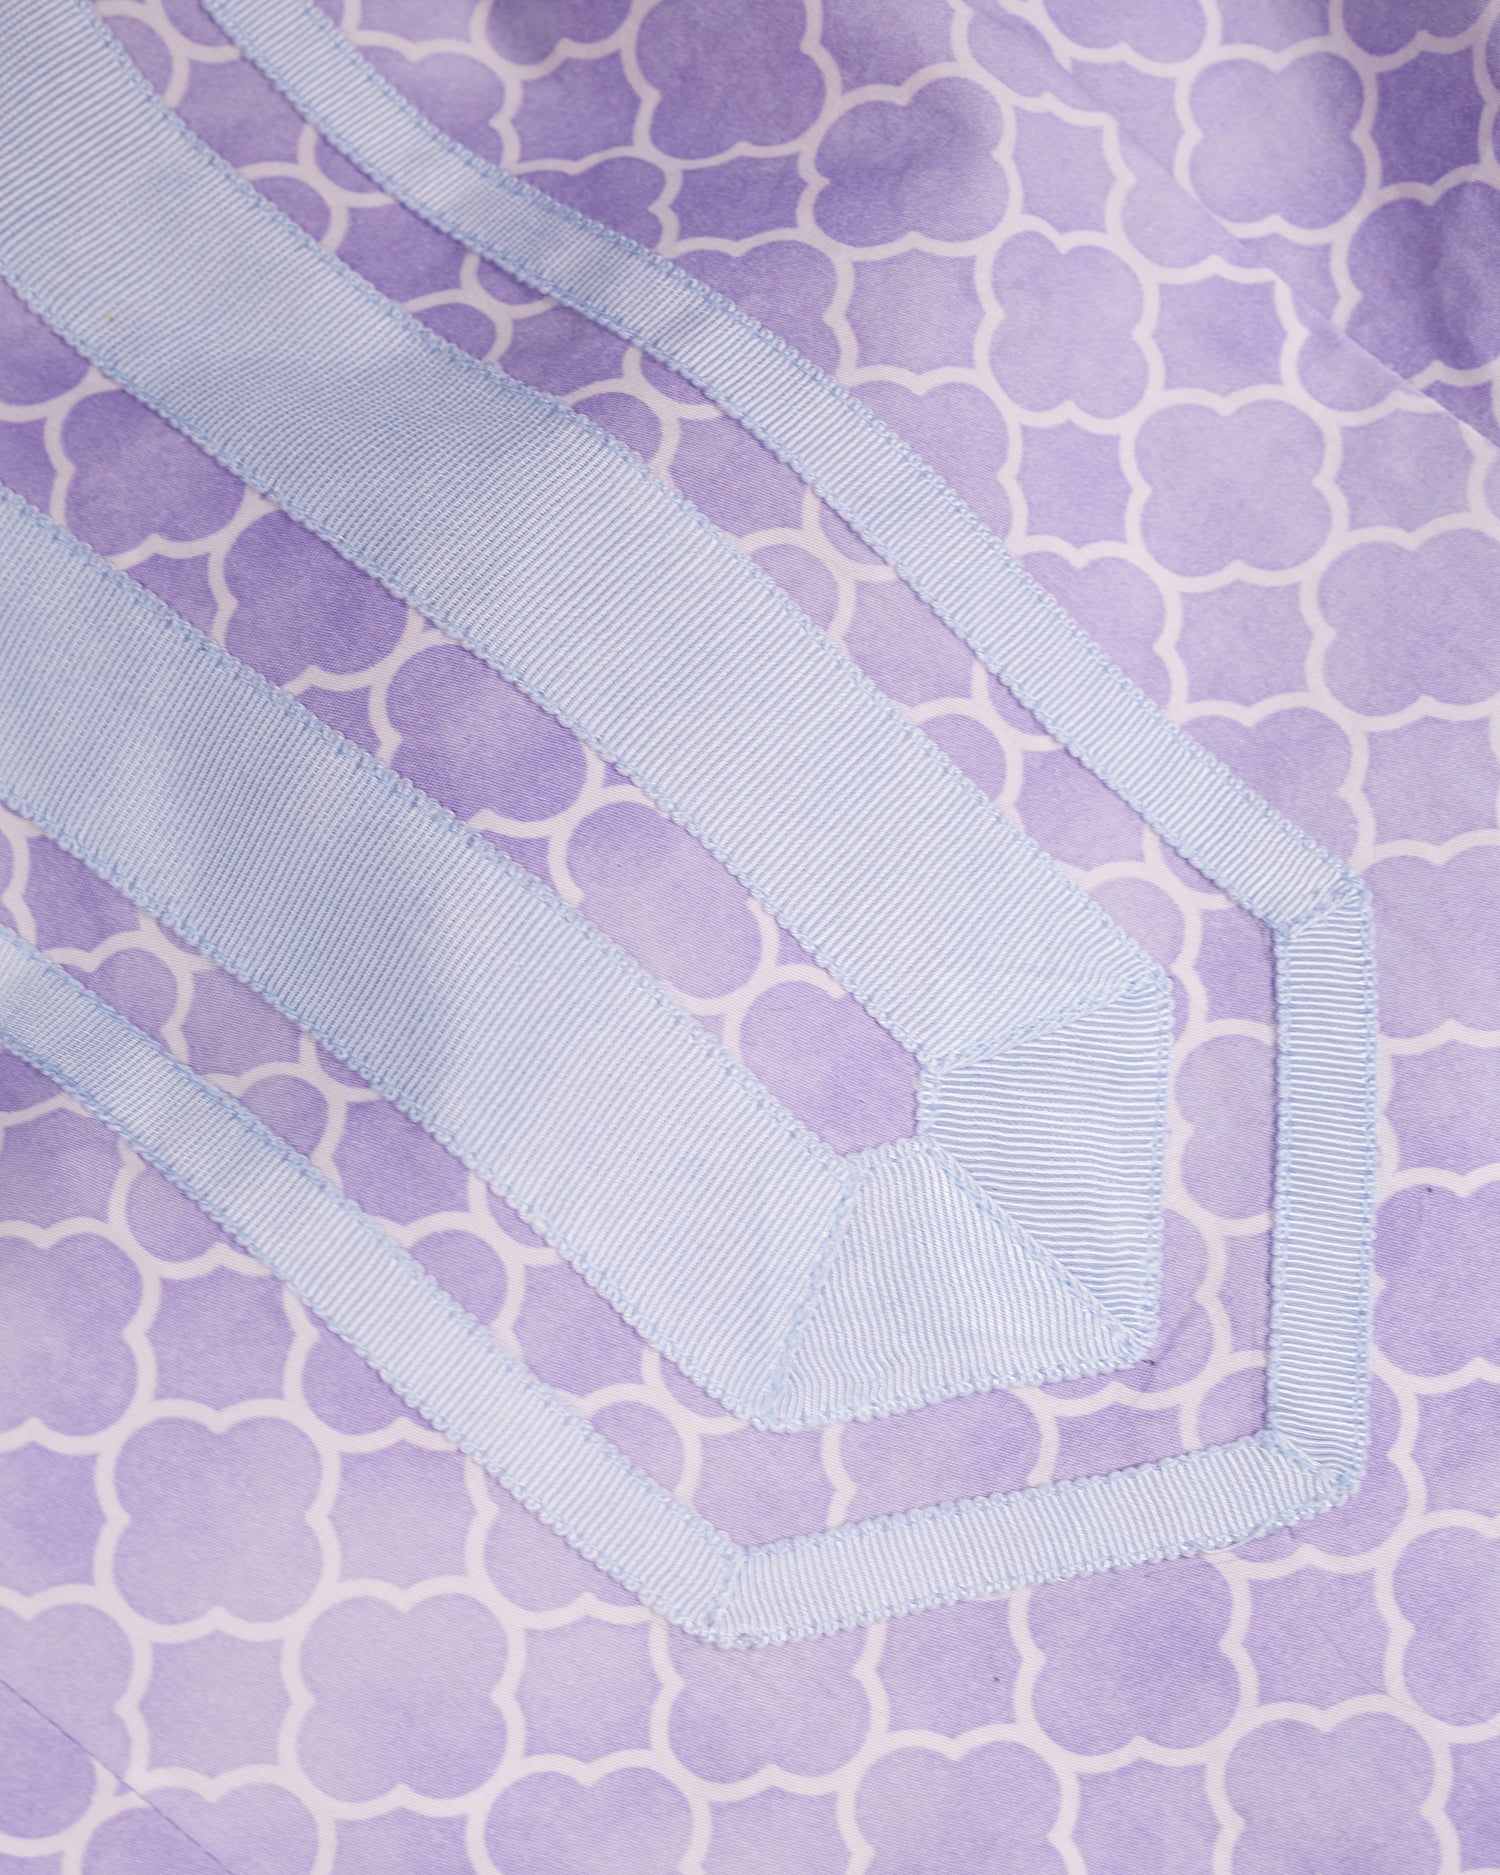 Capri Short Tunic Dress in Alhambra Sunset Lavender Print-Grosgrain Detail